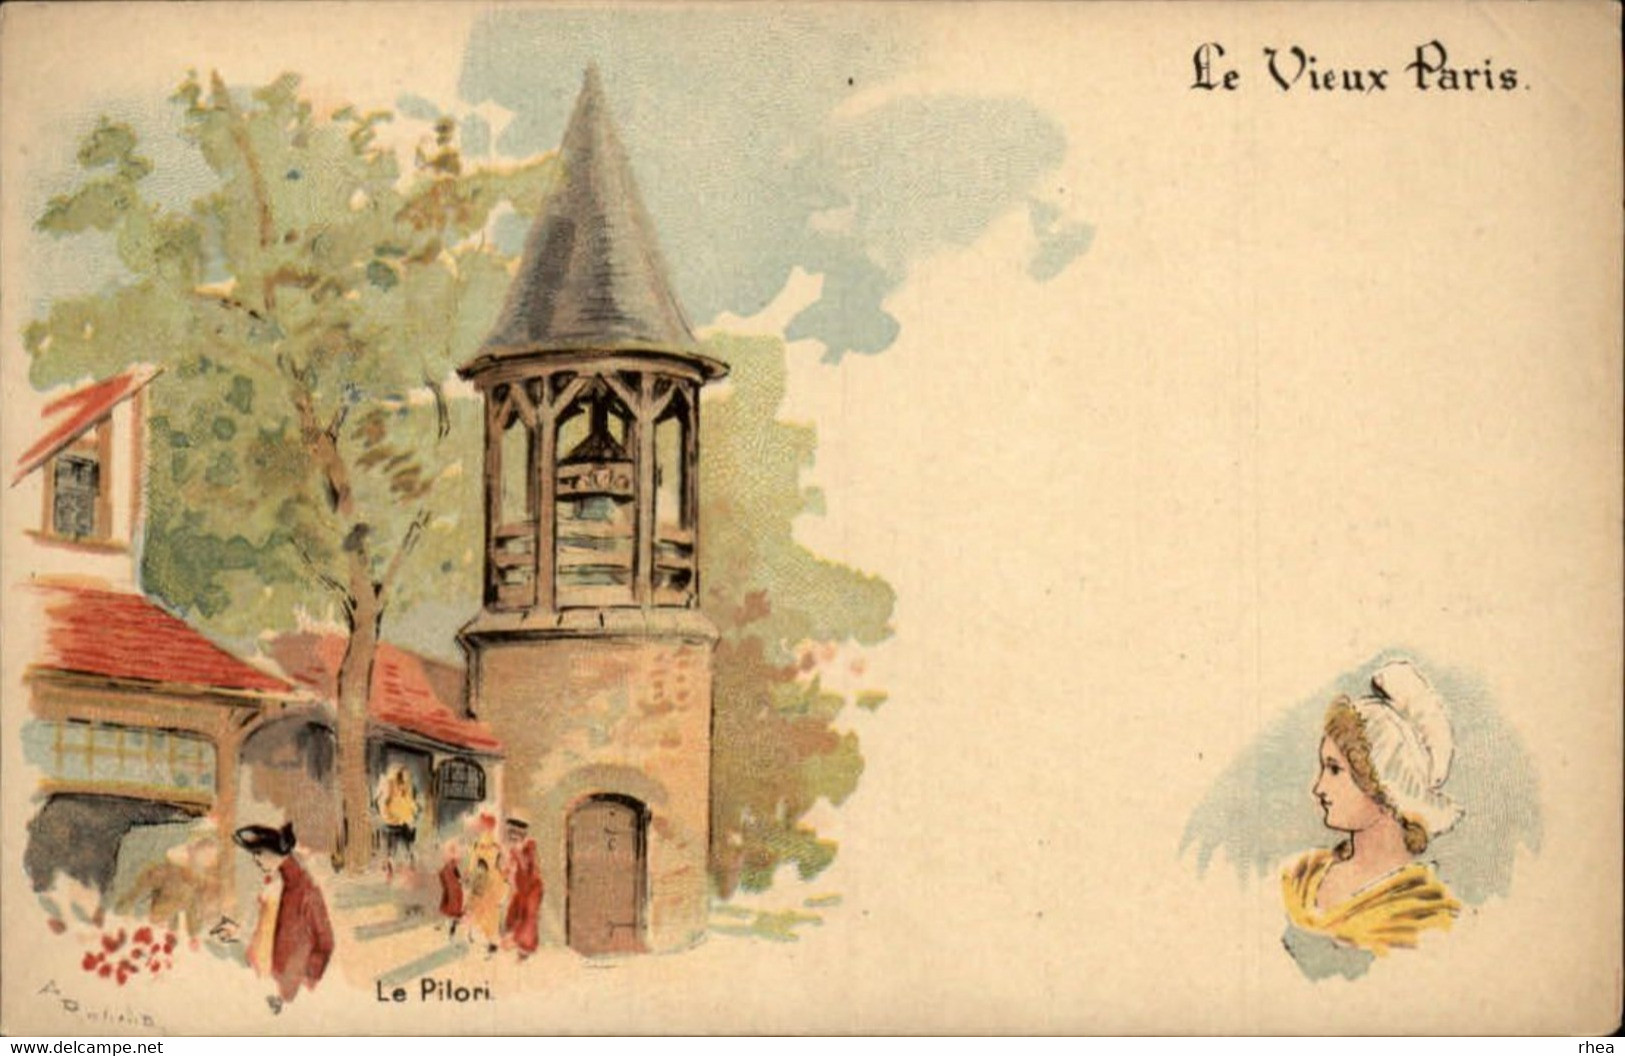 ILLUSTRATEURS - Série de 21 cartes illustrés par ROBIDA - Le Vieux Paris